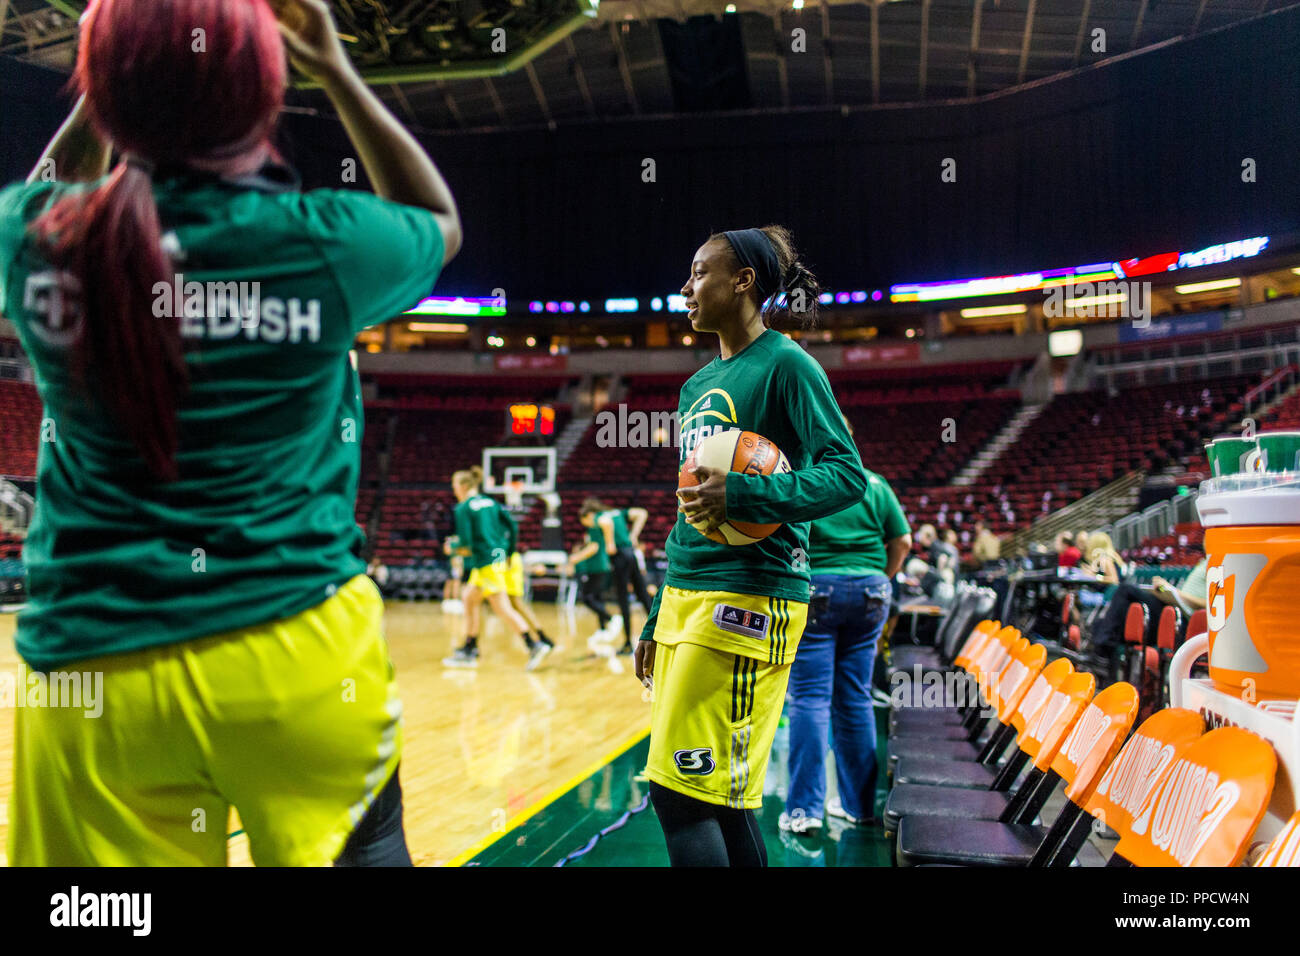 Weibliche Basketball spieler Aufwärmen vor dem Spiel, Seattle, Washington, USA Stockfoto